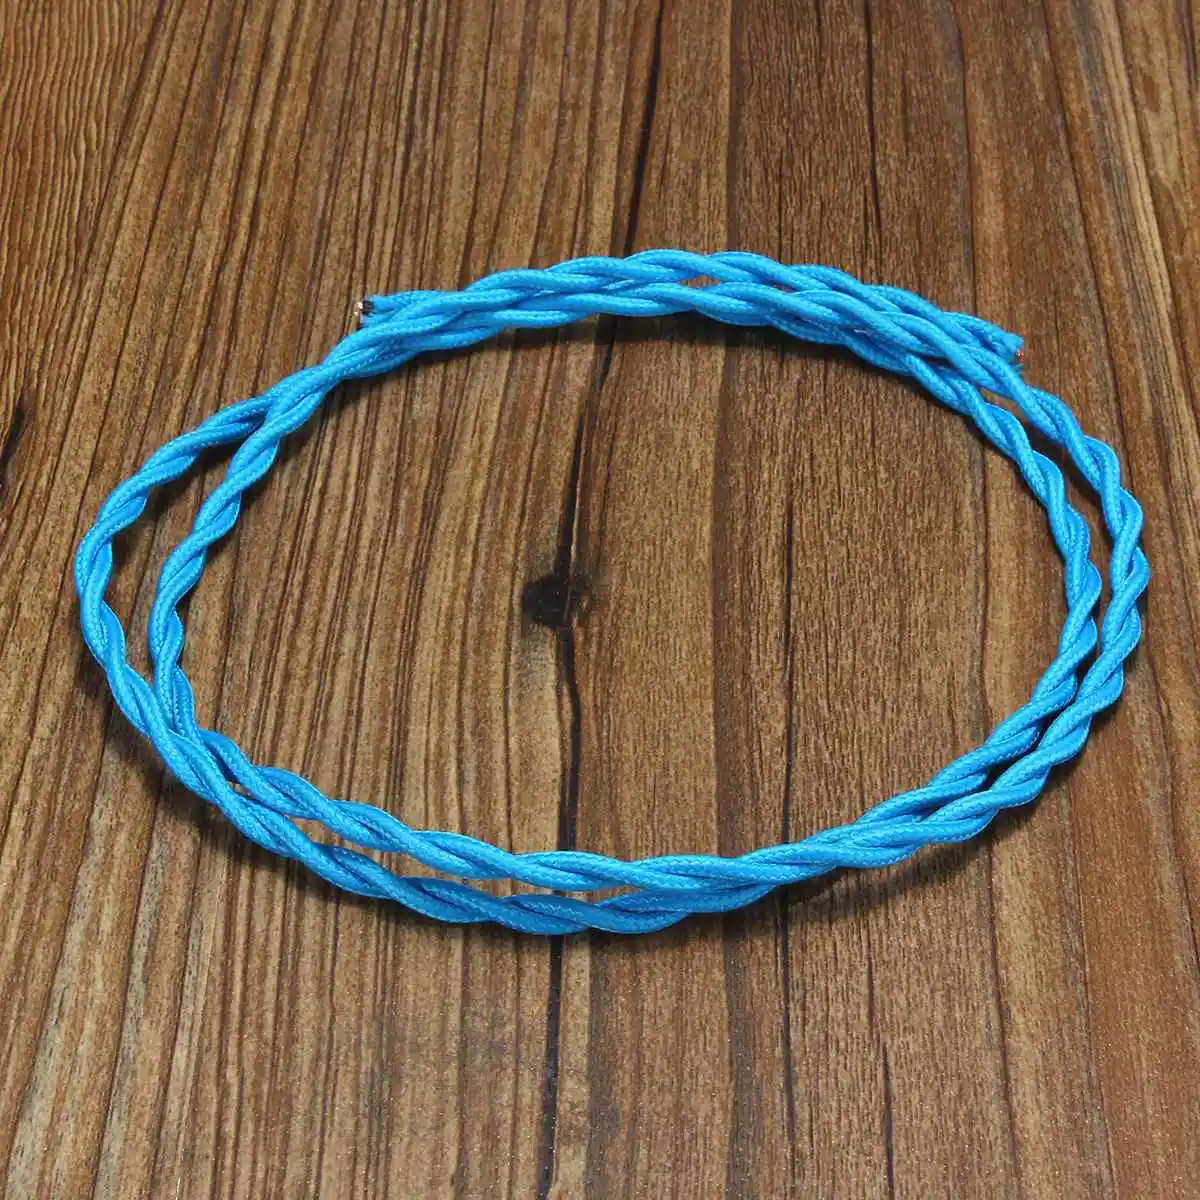 Горячая 1 м 2 ядра винтажный твист Электрический провод цветной плетеный провод тканевый кабель винтажная лампа шнур питания - Цвет: Navy blue